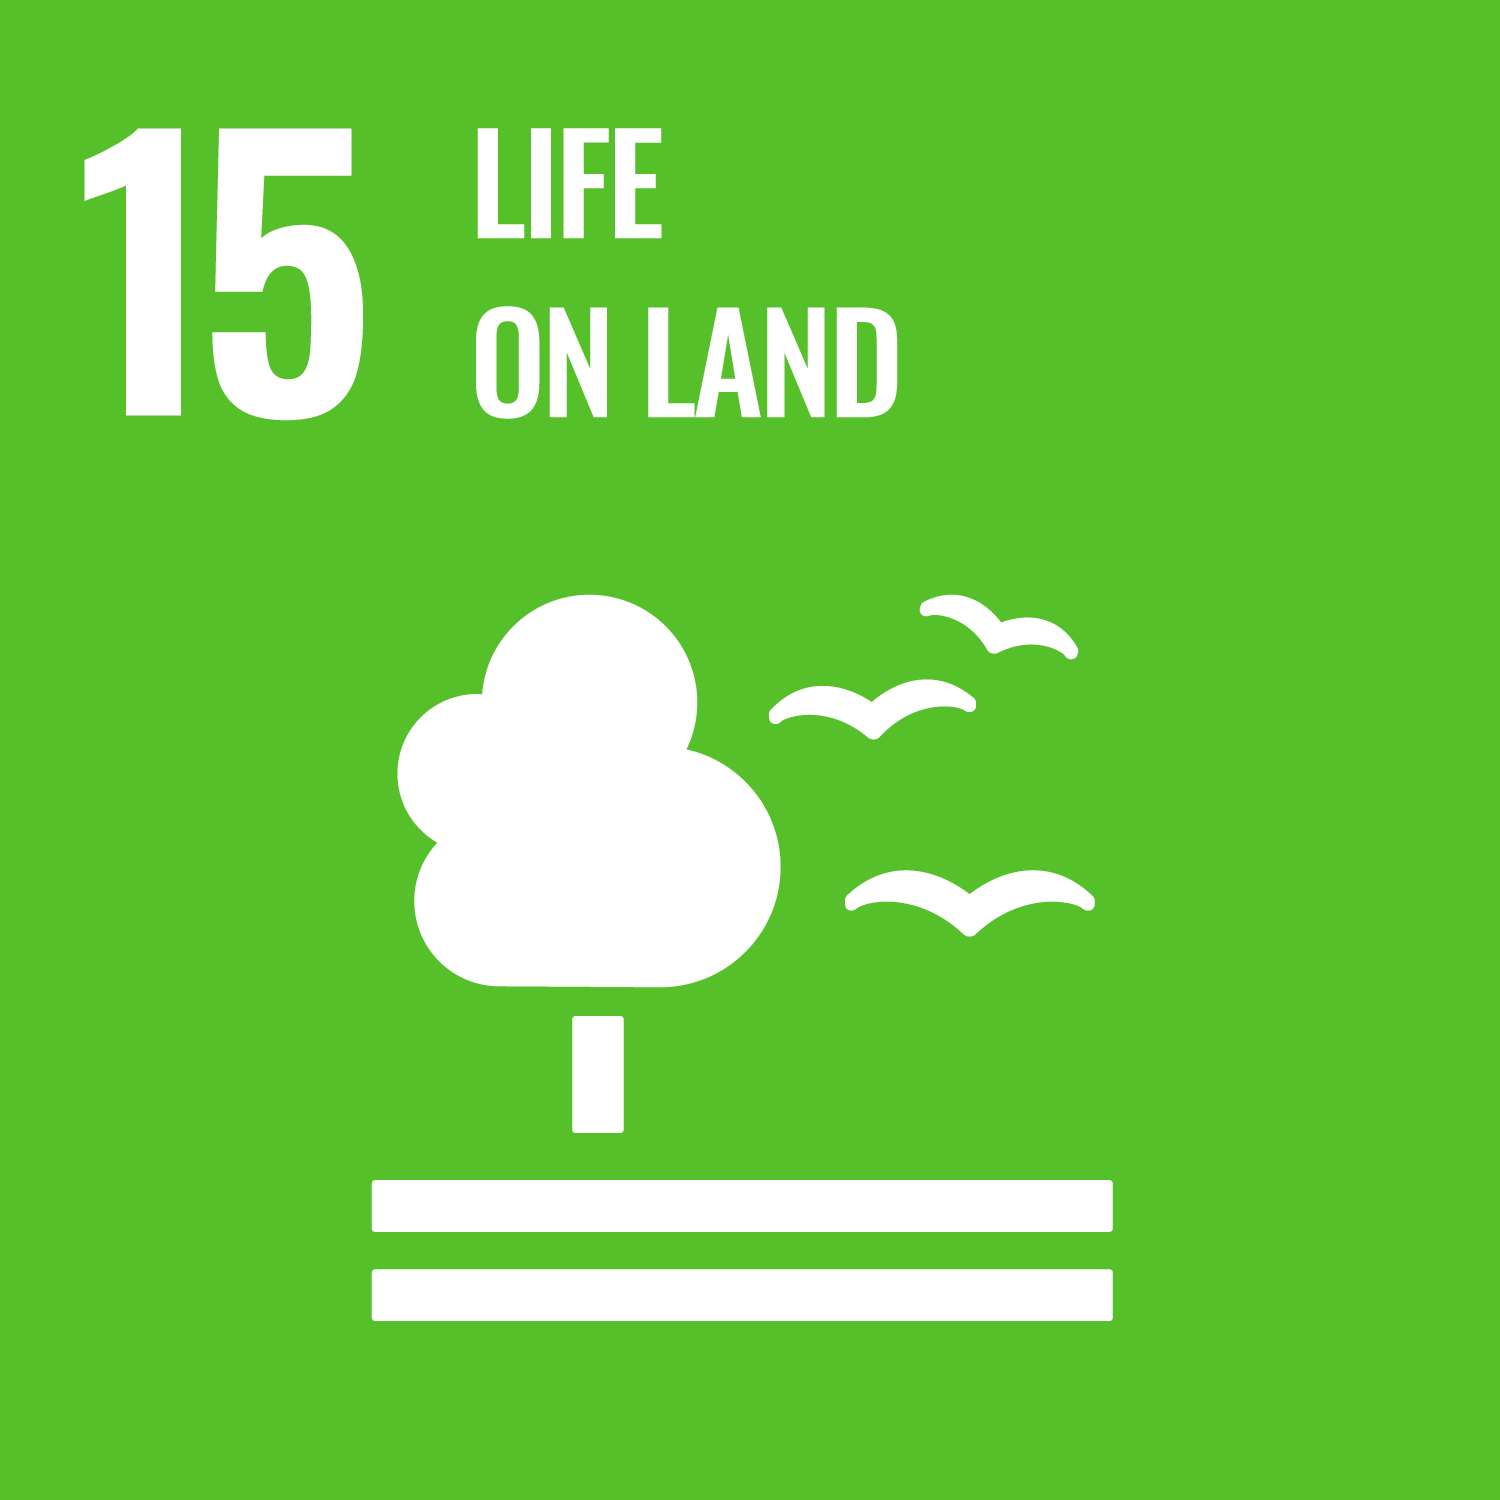 UN sustainable development goal 15 life on land